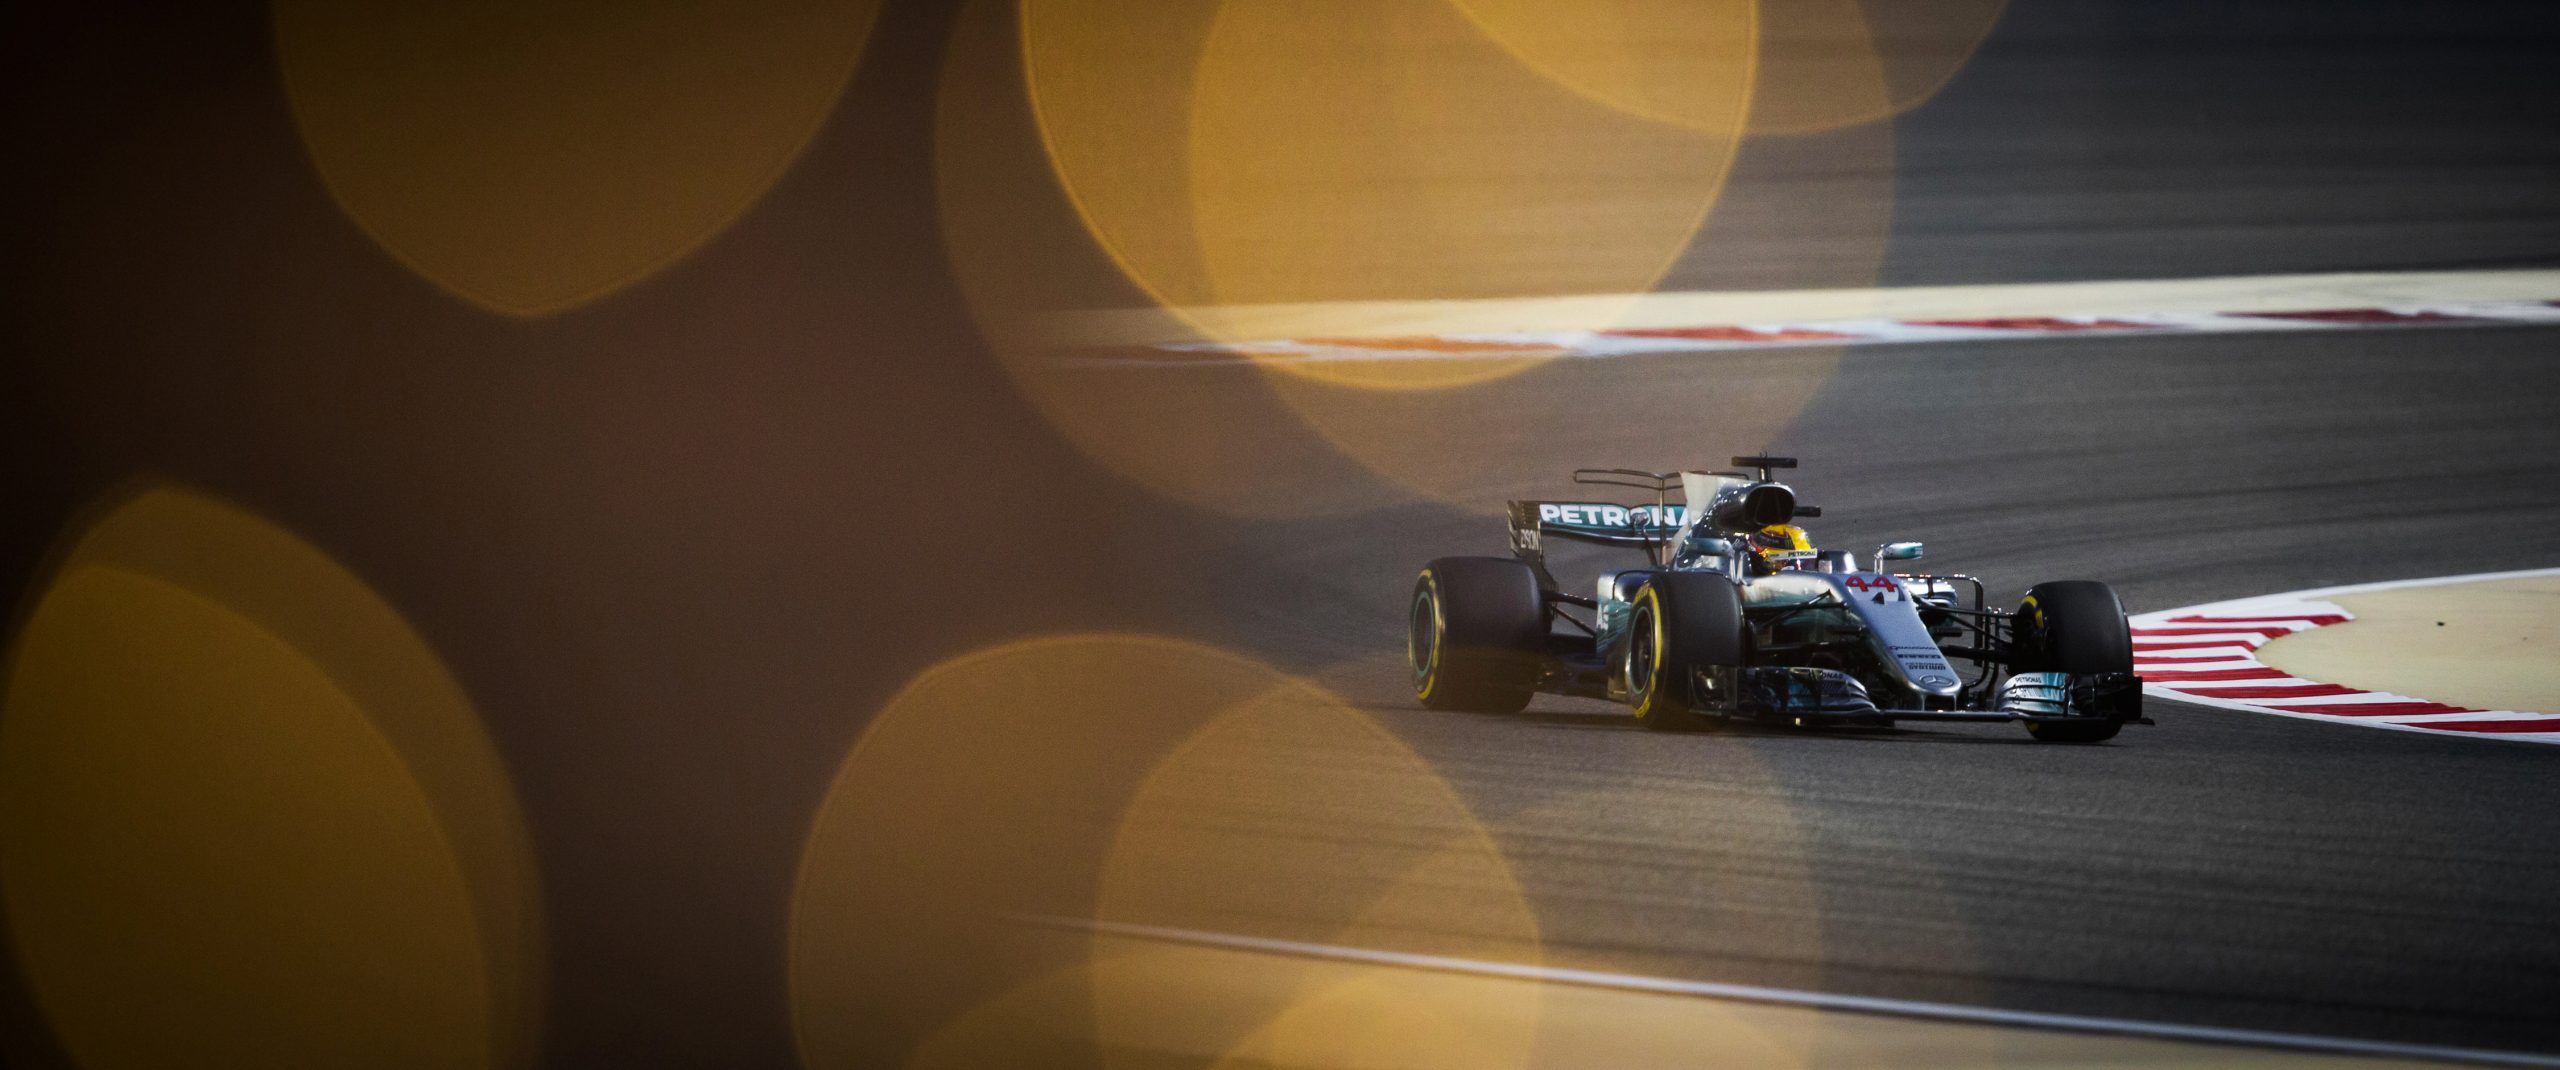 F1 – BAHRAIN GRAND PRIX 2017